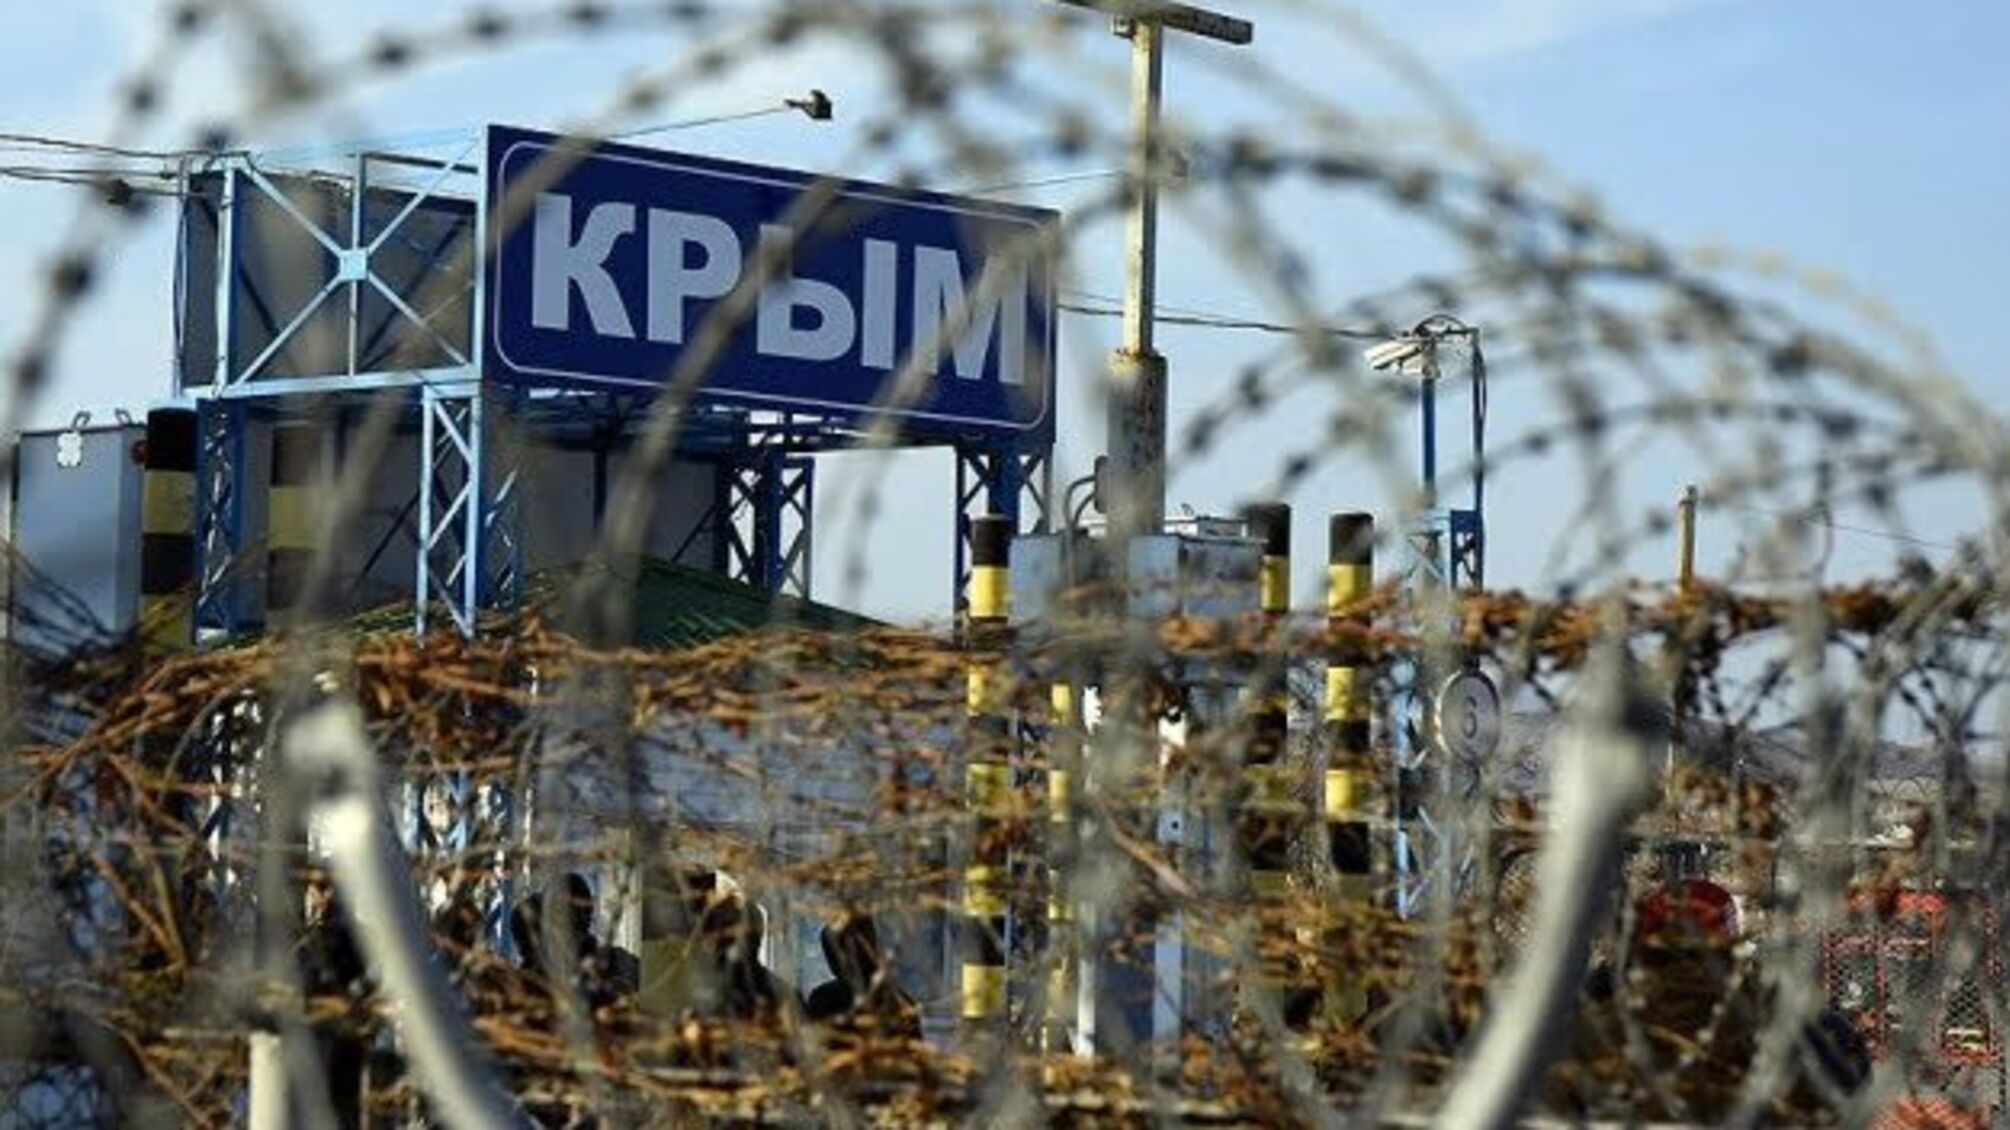 У Криму затримали господаря будинку, де в ході обшуку було вбито людину